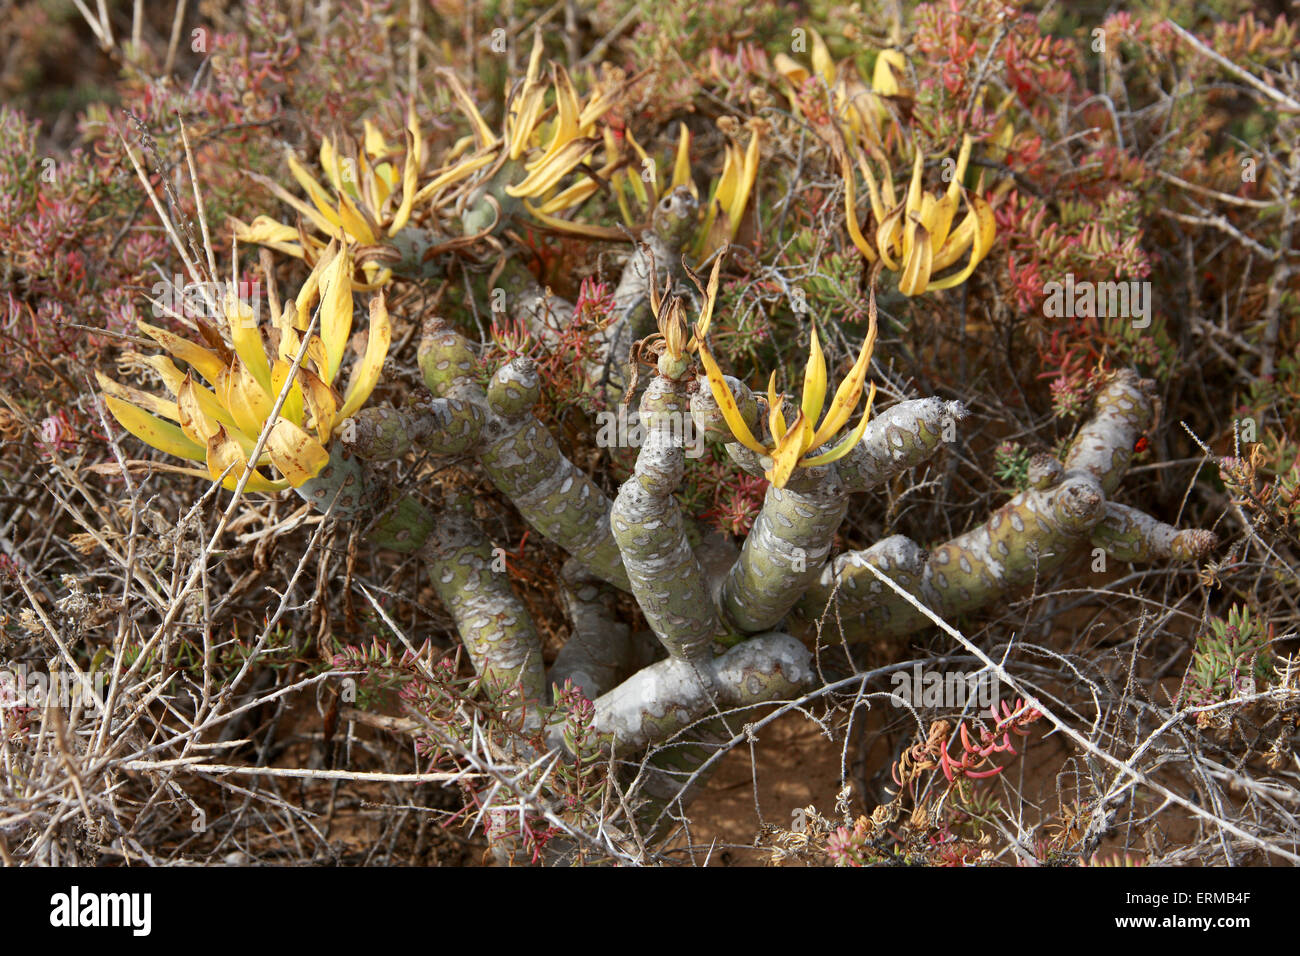 Verode o Berode, verodes neriifolia, Asteraceae. Anteriormente conocida como Senecio verodes. Es nativa y endémica de las Islas Canarias. Foto de stock